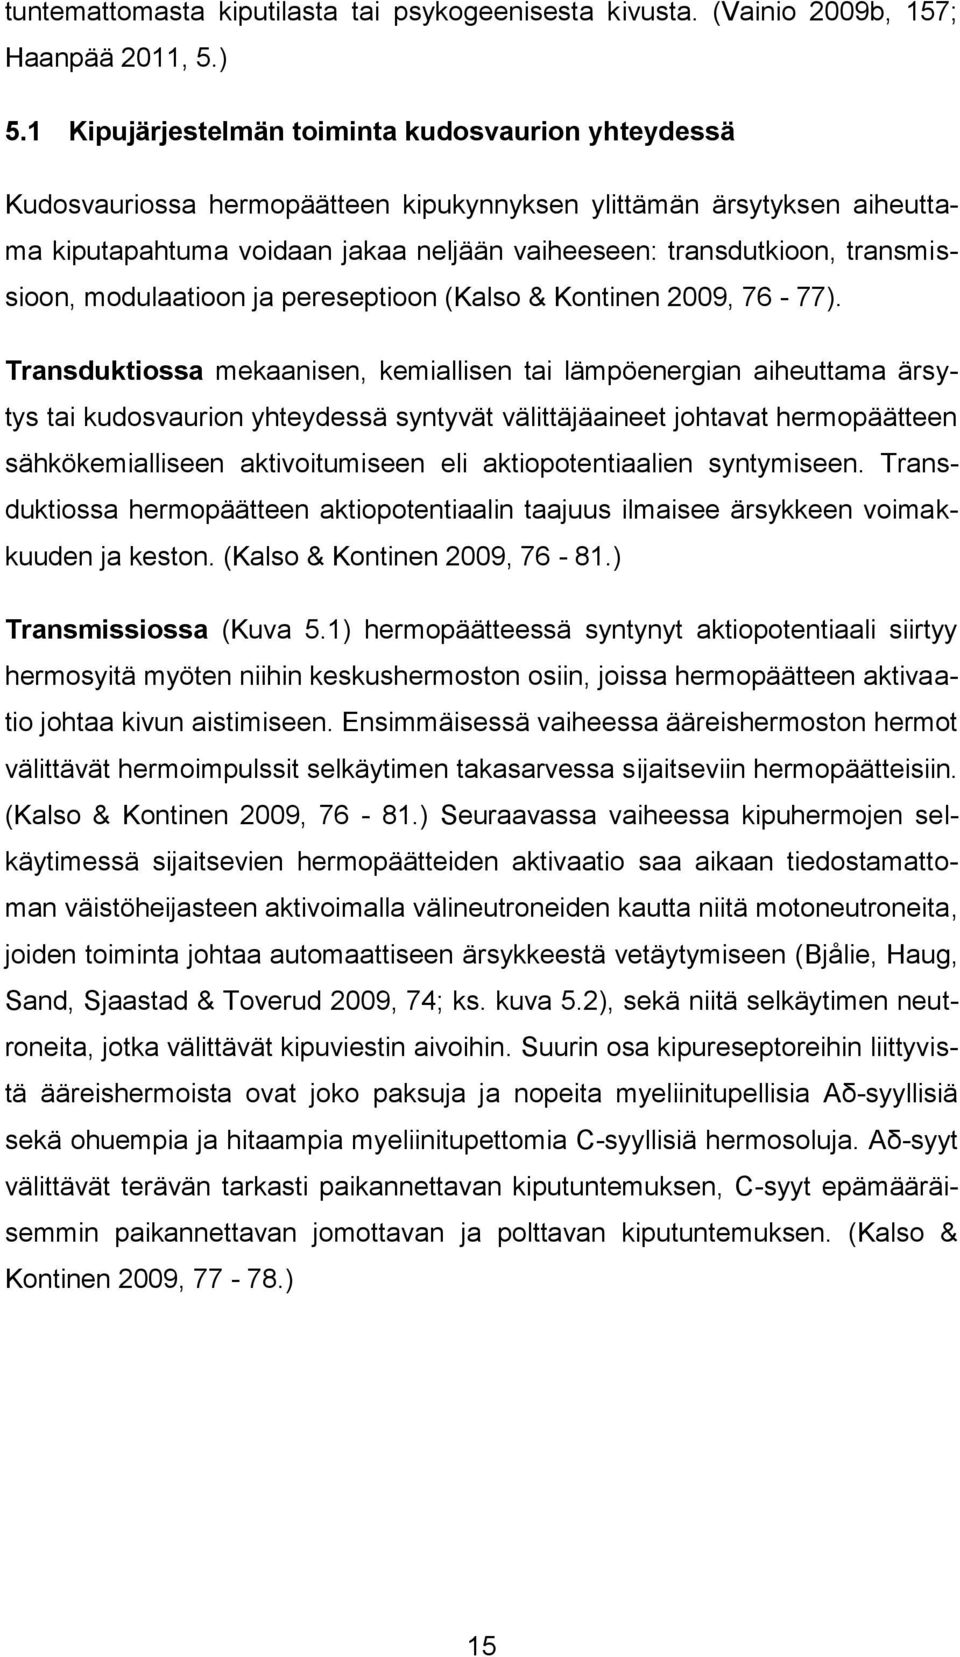 transmissioon, modulaatioon ja pereseptioon (Kalso & Kontinen 2009, 76-77).